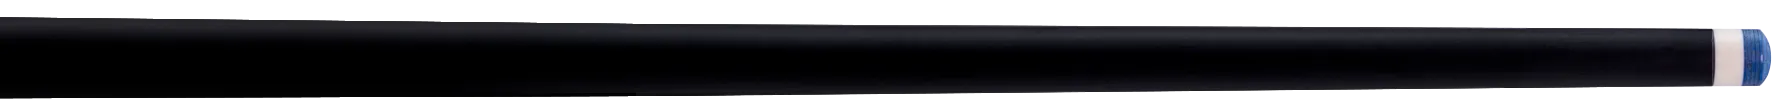 shaft-molinari-lancia-carbon-black-collar-ring-tip